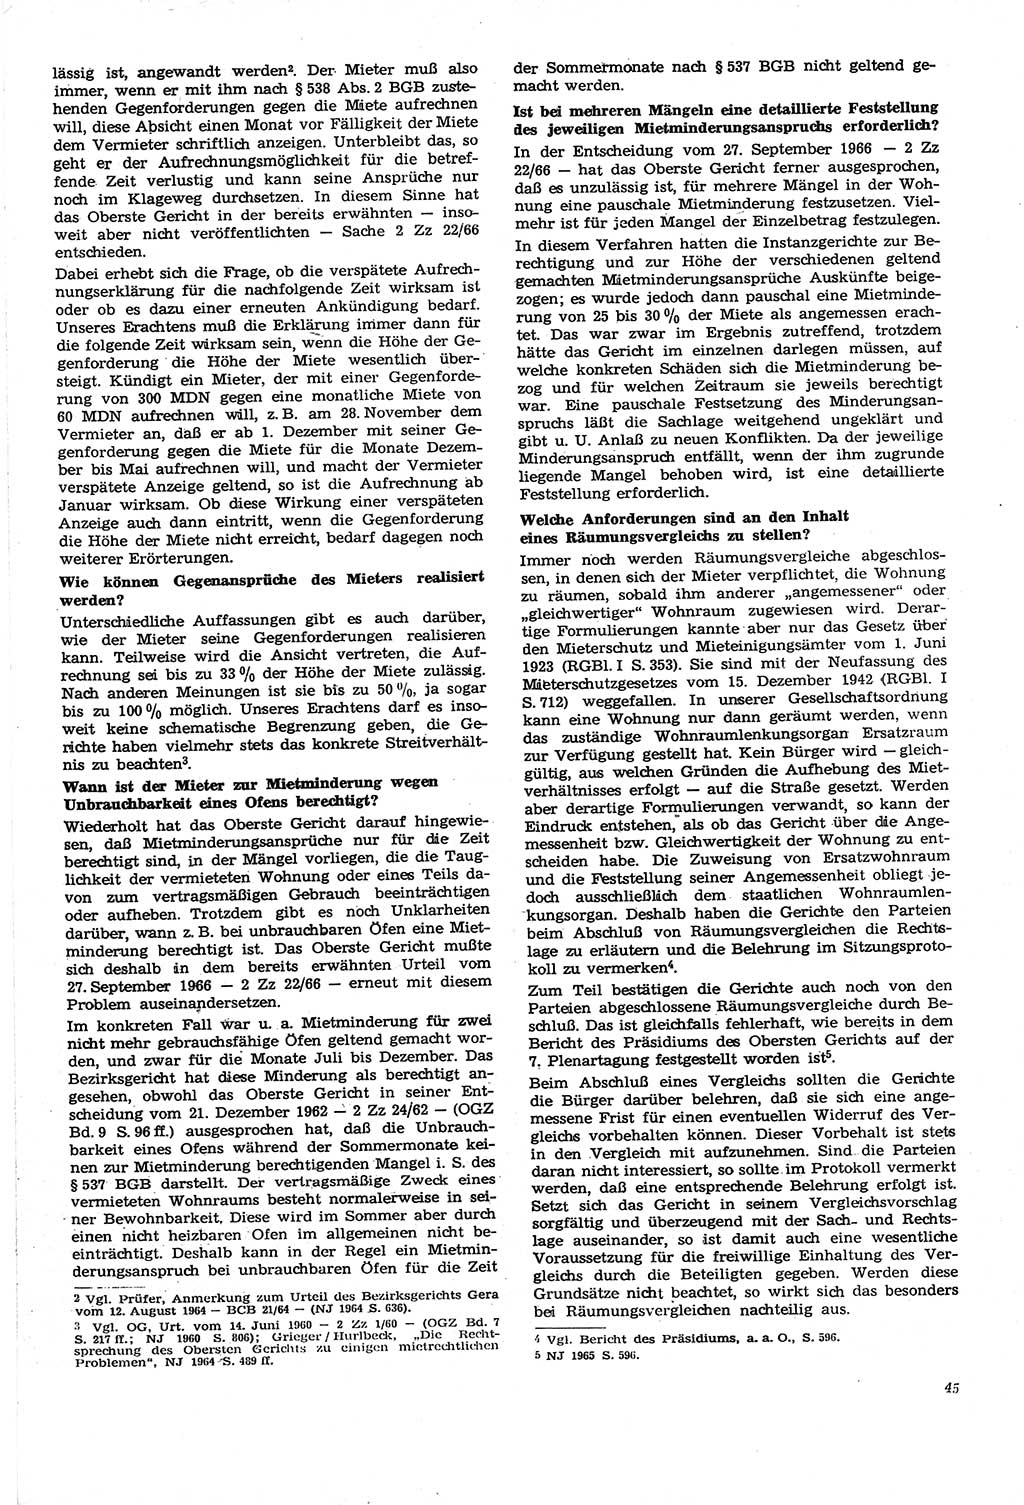 Neue Justiz (NJ), Zeitschrift für Recht und Rechtswissenschaft [Deutsche Demokratische Republik (DDR)], 21. Jahrgang 1967, Seite 45 (NJ DDR 1967, S. 45)